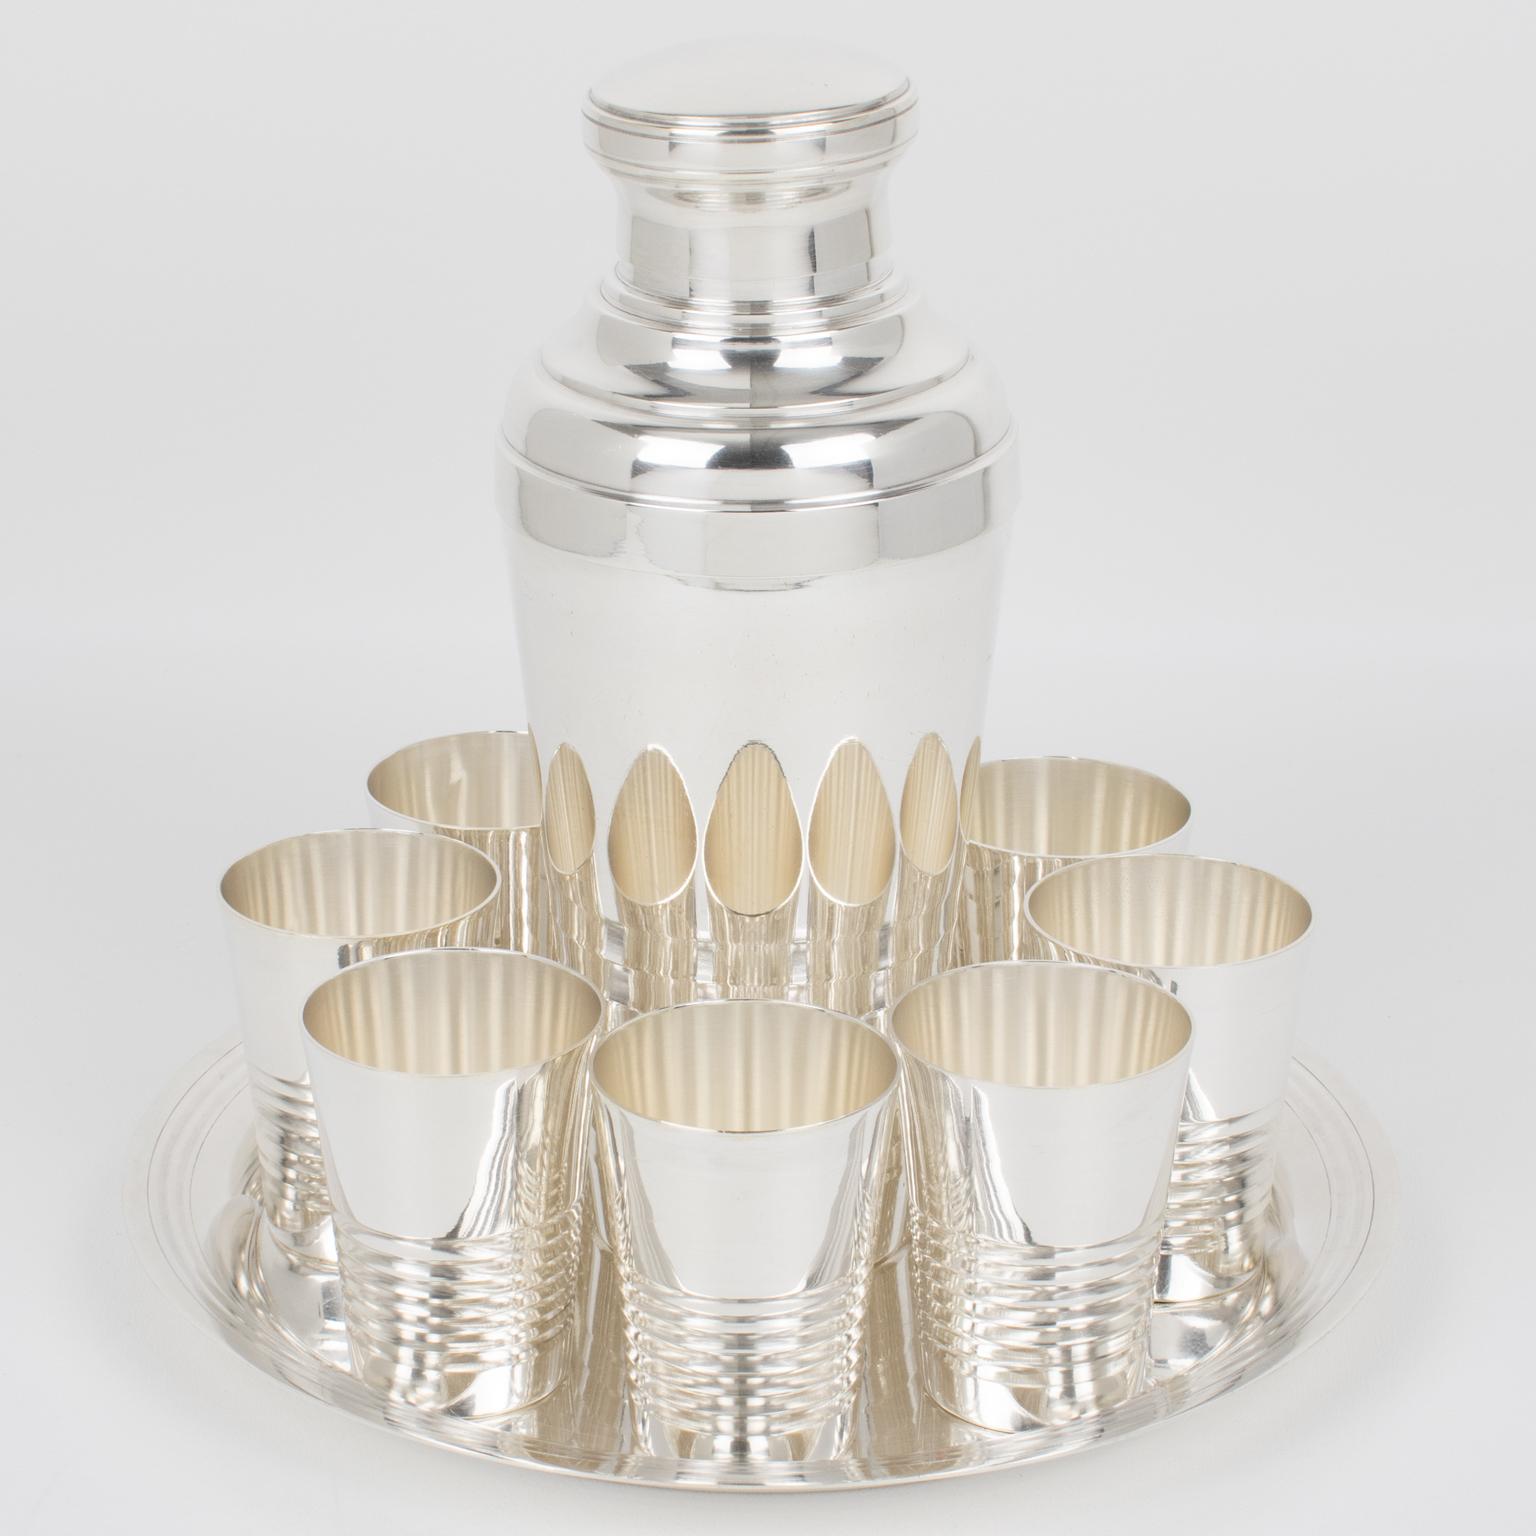 Die Pariser Silberschmiede Roux-Marquiand entwarf in den 1940er Jahren dieses elegante Art-Déco-Bargeschirr aus Silberblech. Der dreiteilige, zylindrische Cocktail- oder Martini-Shaker hat einen abnehmbaren Deckel und ein Sieb. Ergänzt wird das Set